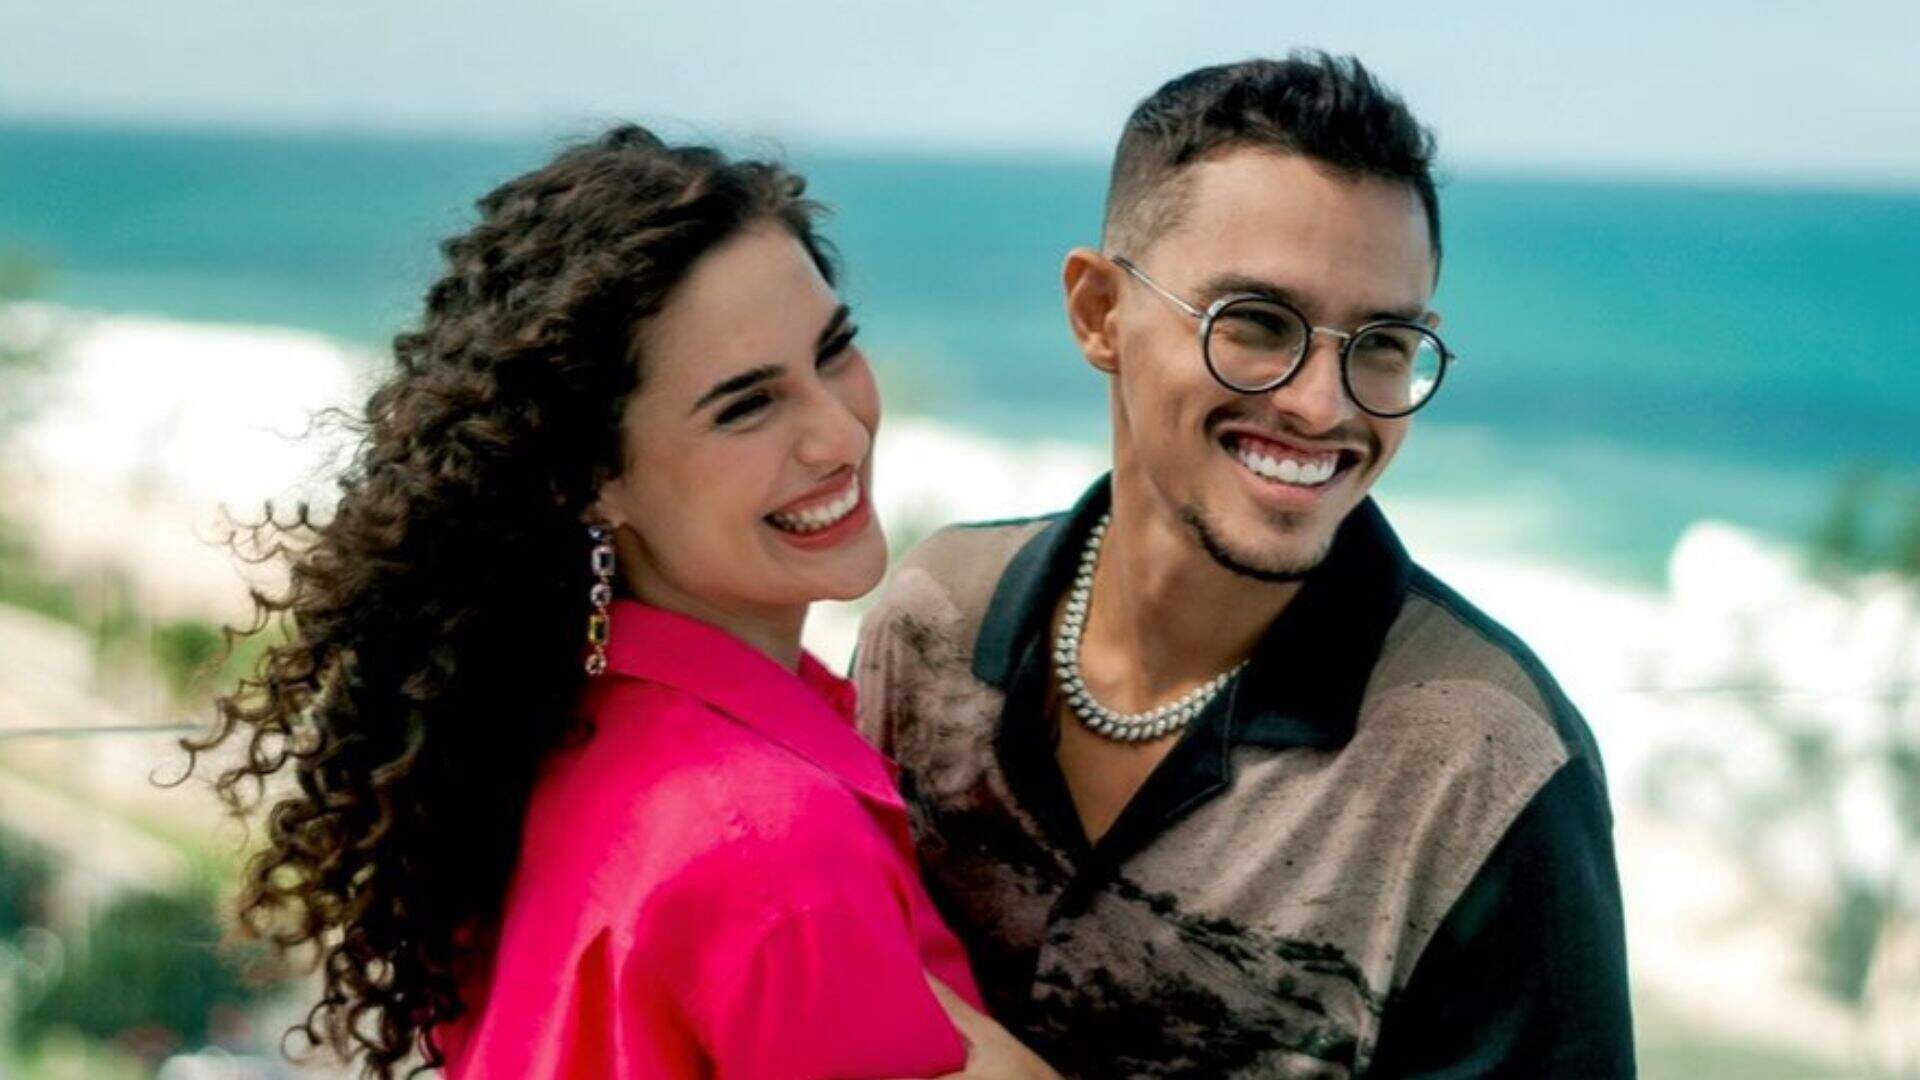 Lívian Aragão e Jota terminam relacionamento: “Meses intensos” - Metropolitana FM